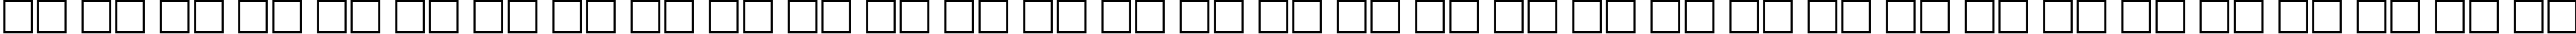 Пример написания русского алфавита шрифтом Futura Narrow